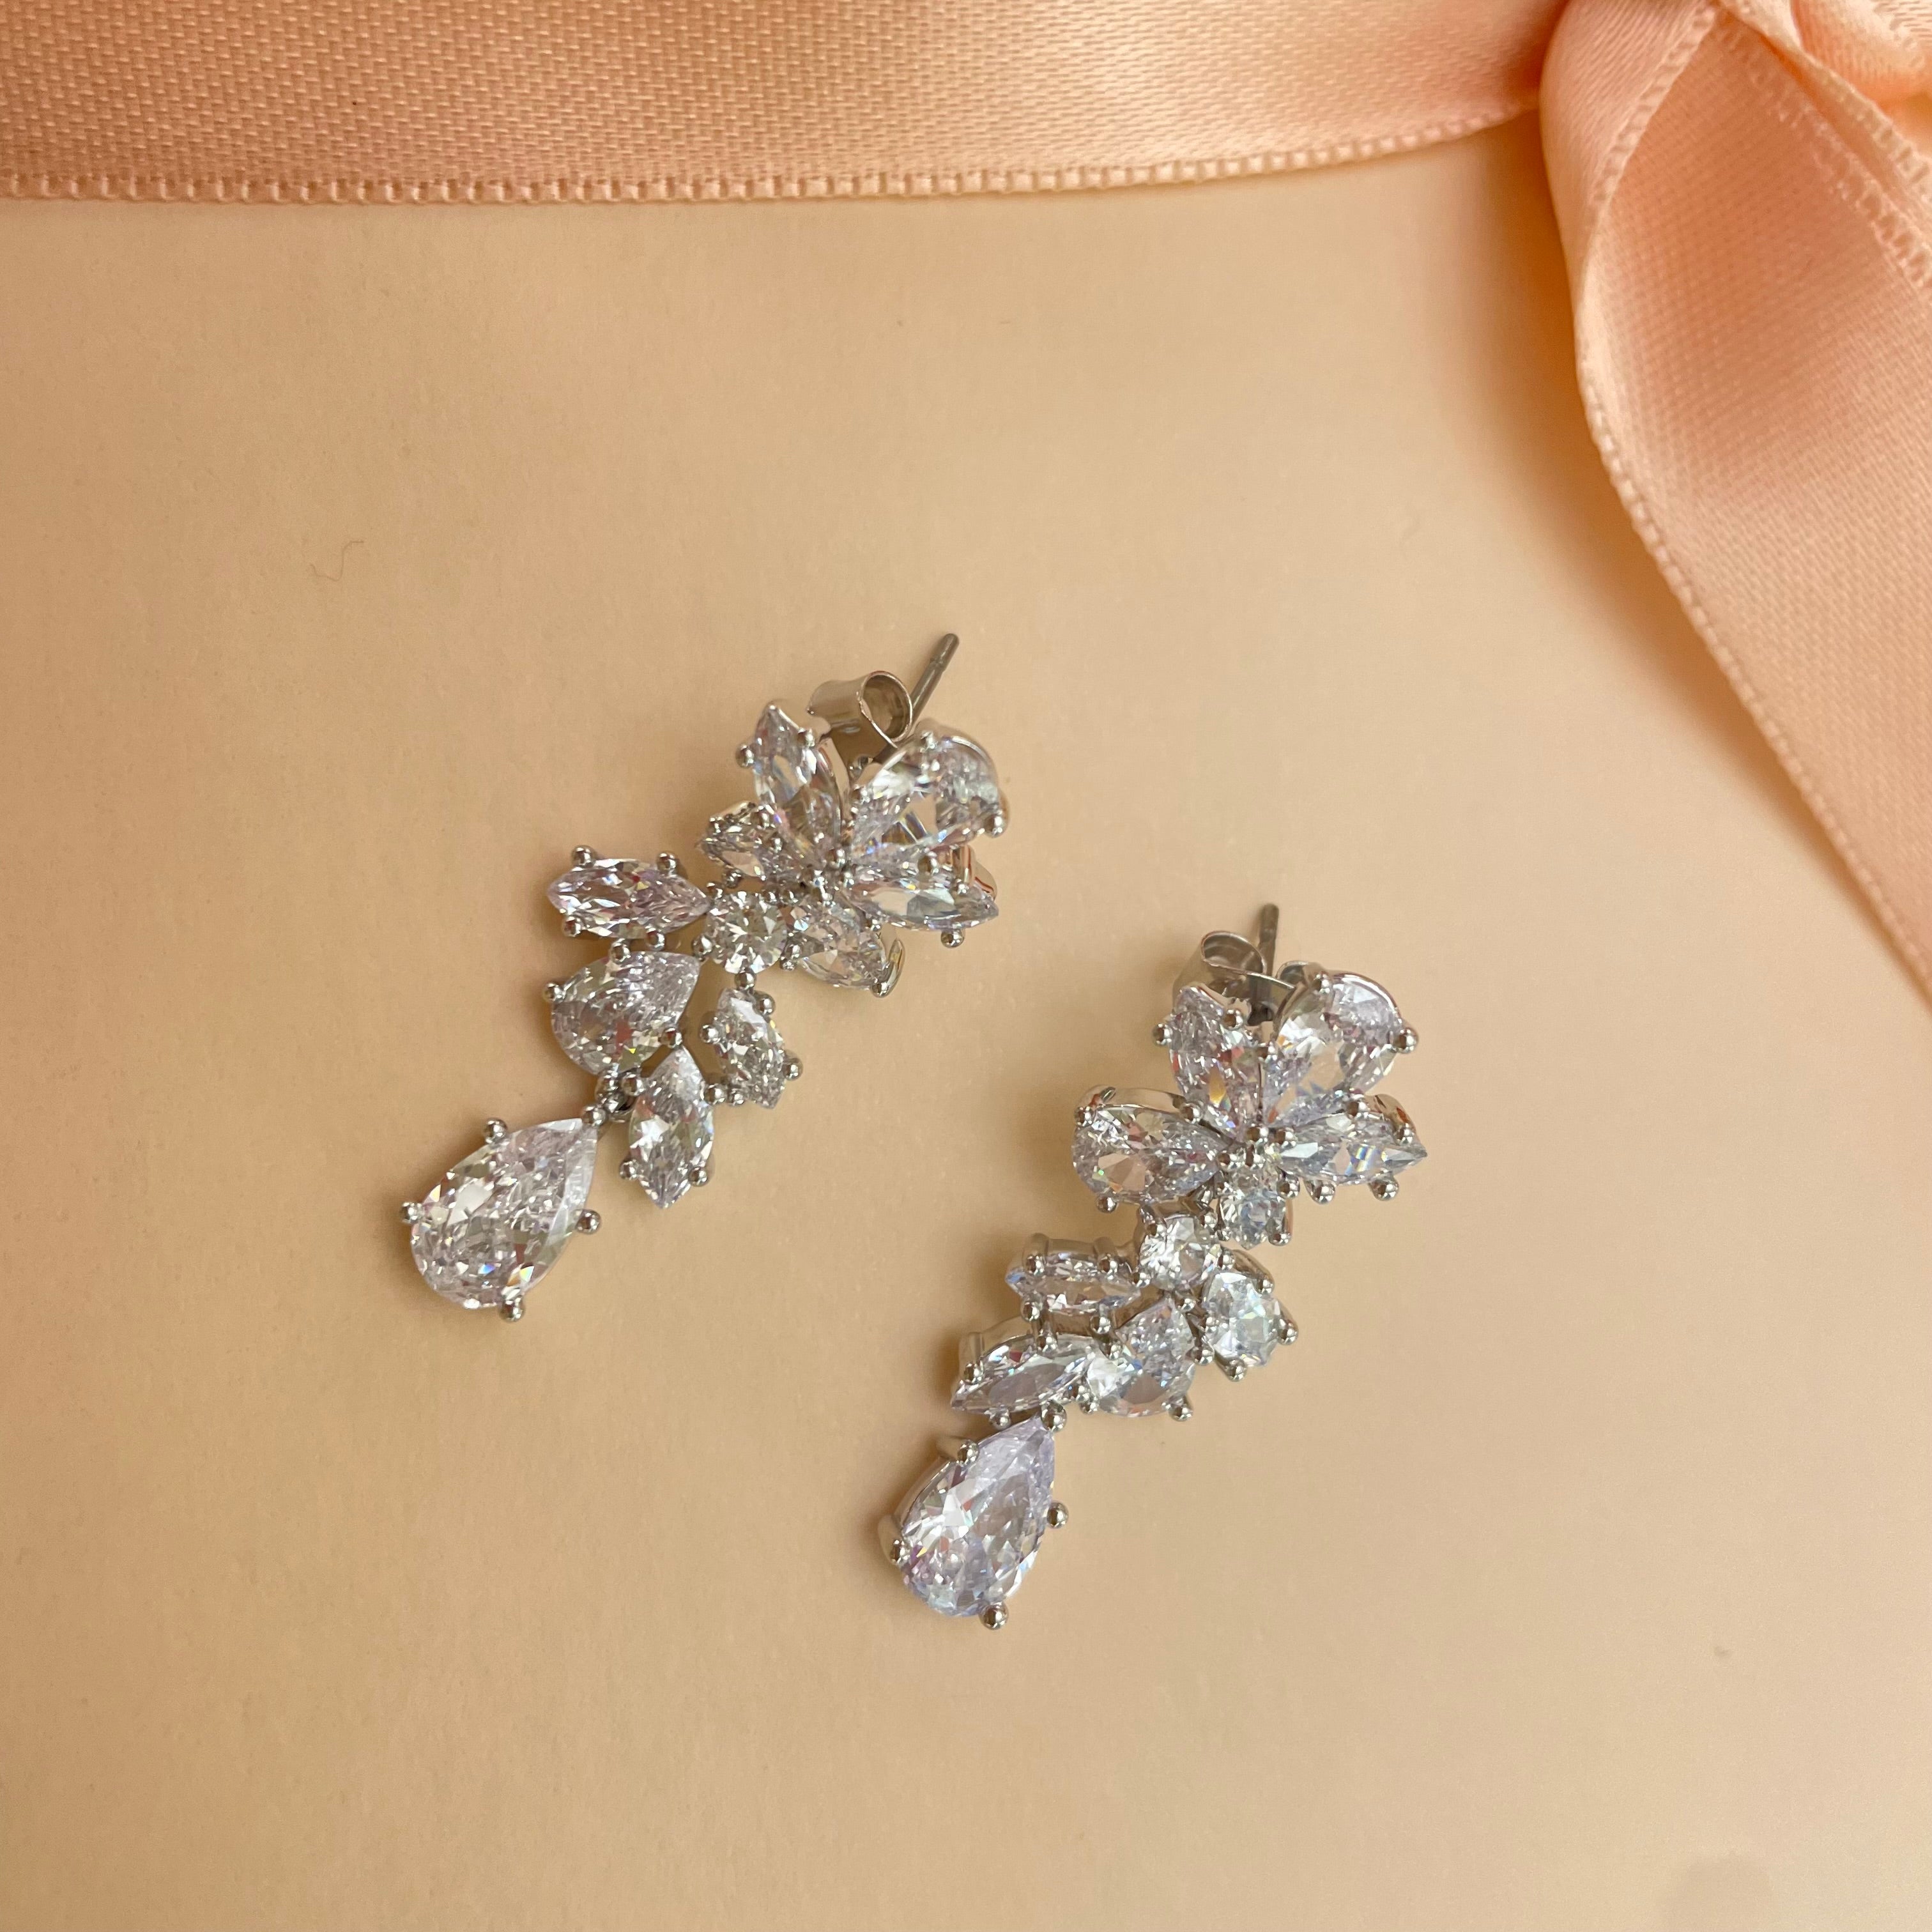 Elegant delicate earrings